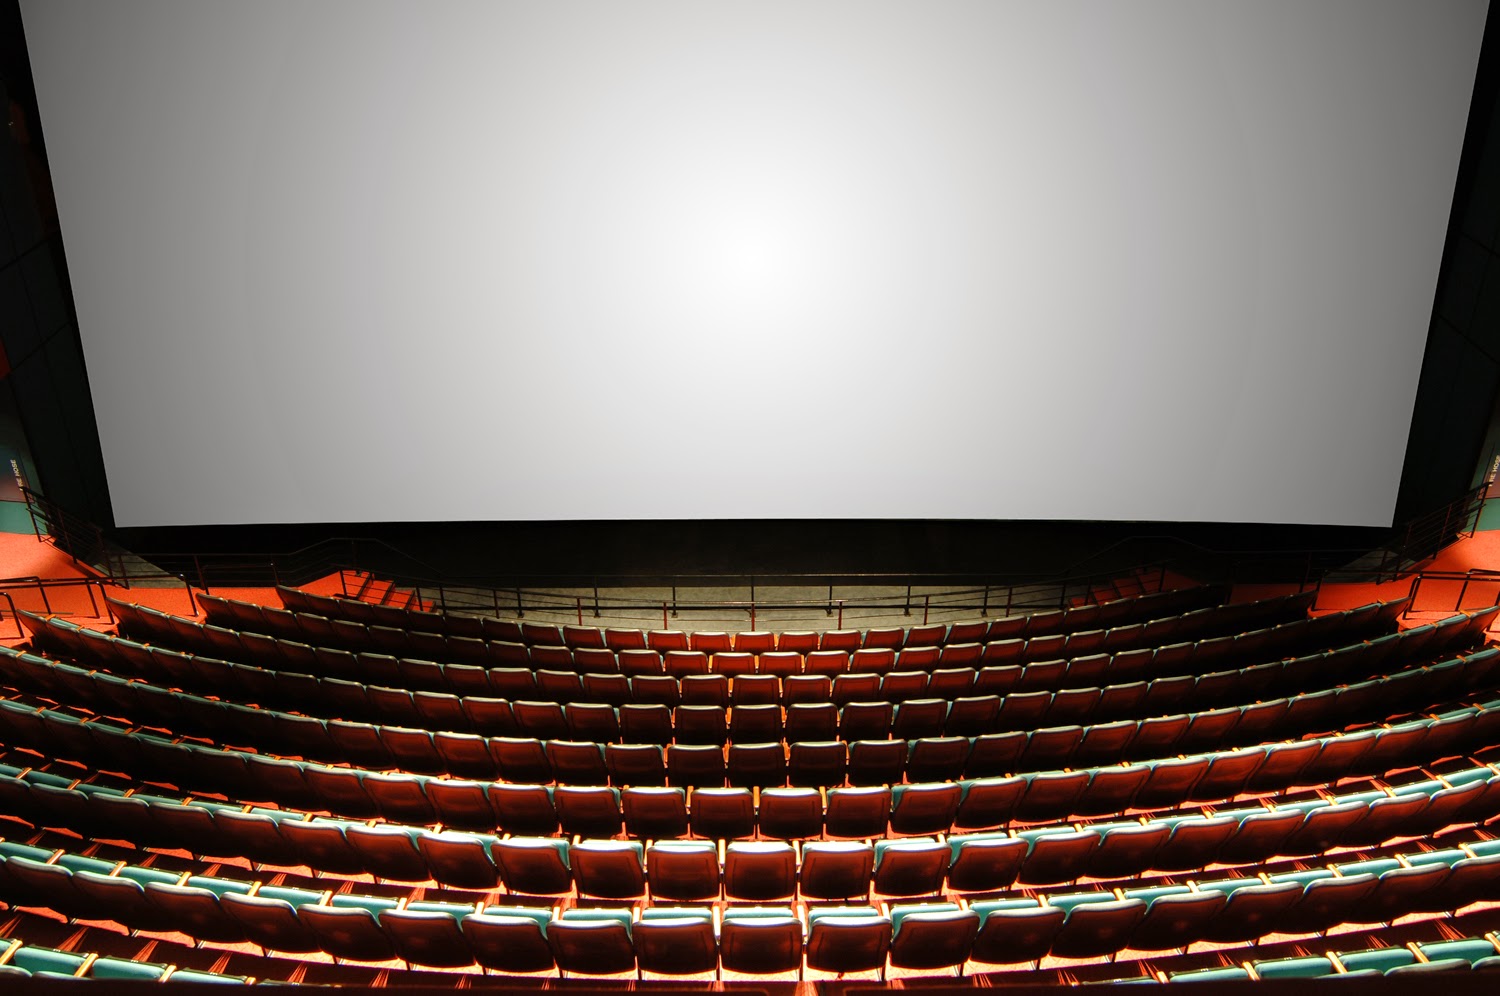 Кинотеатр с самым большим экраном. Самый большой экран аймакс в мире. IMAX экран. Формат IMAX 3d. Зал 1 IMAX 2d.